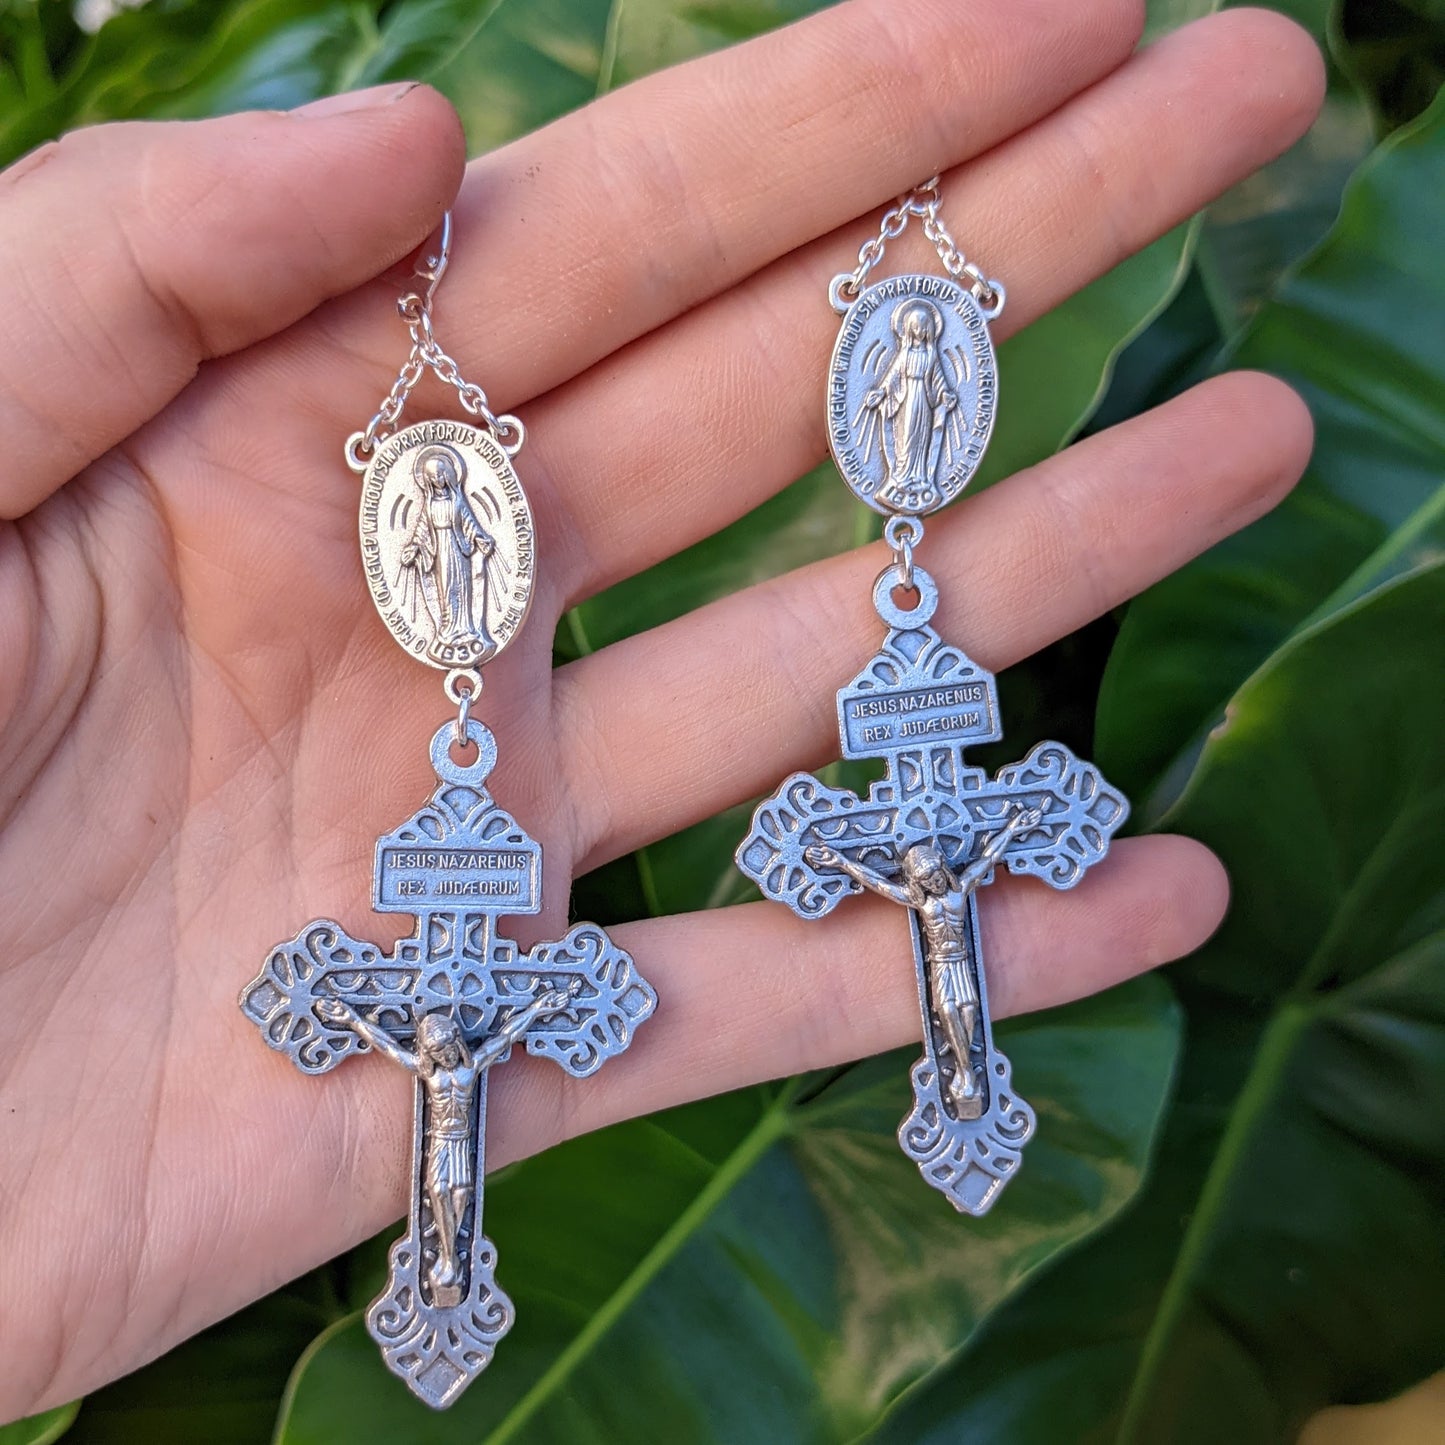 Jesus of Nazareth Rosary Pair - Silver